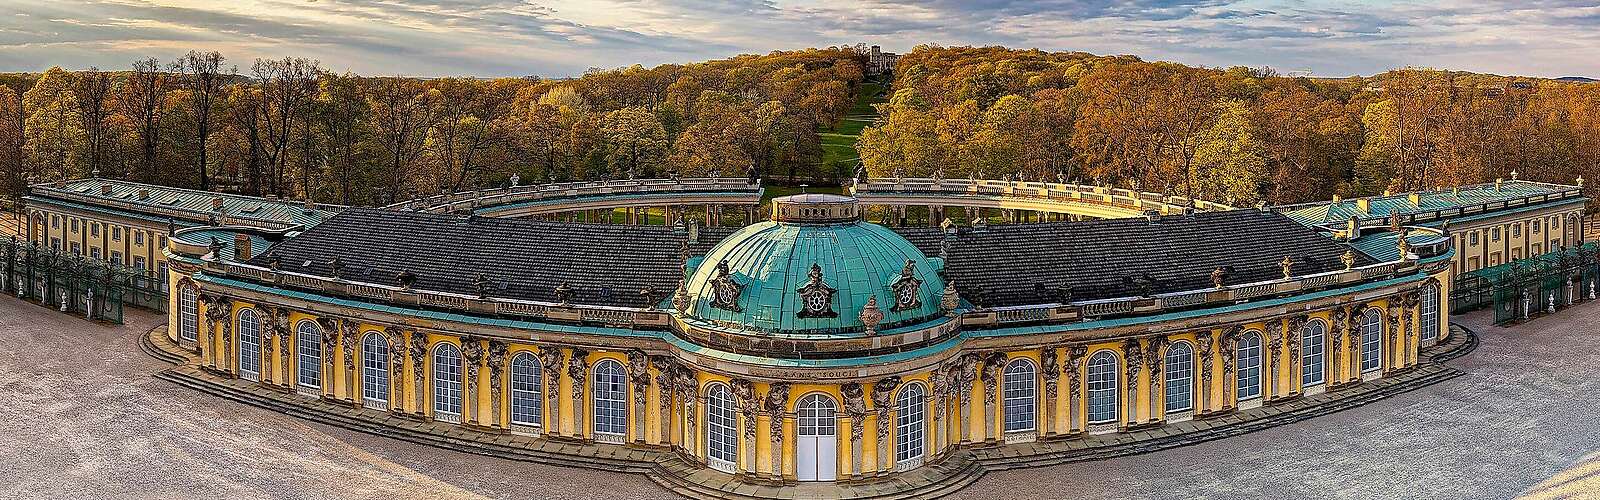 Schloss Sanssouci,
        
    

        Picture: PMSG und SPSG/André Stiebitz